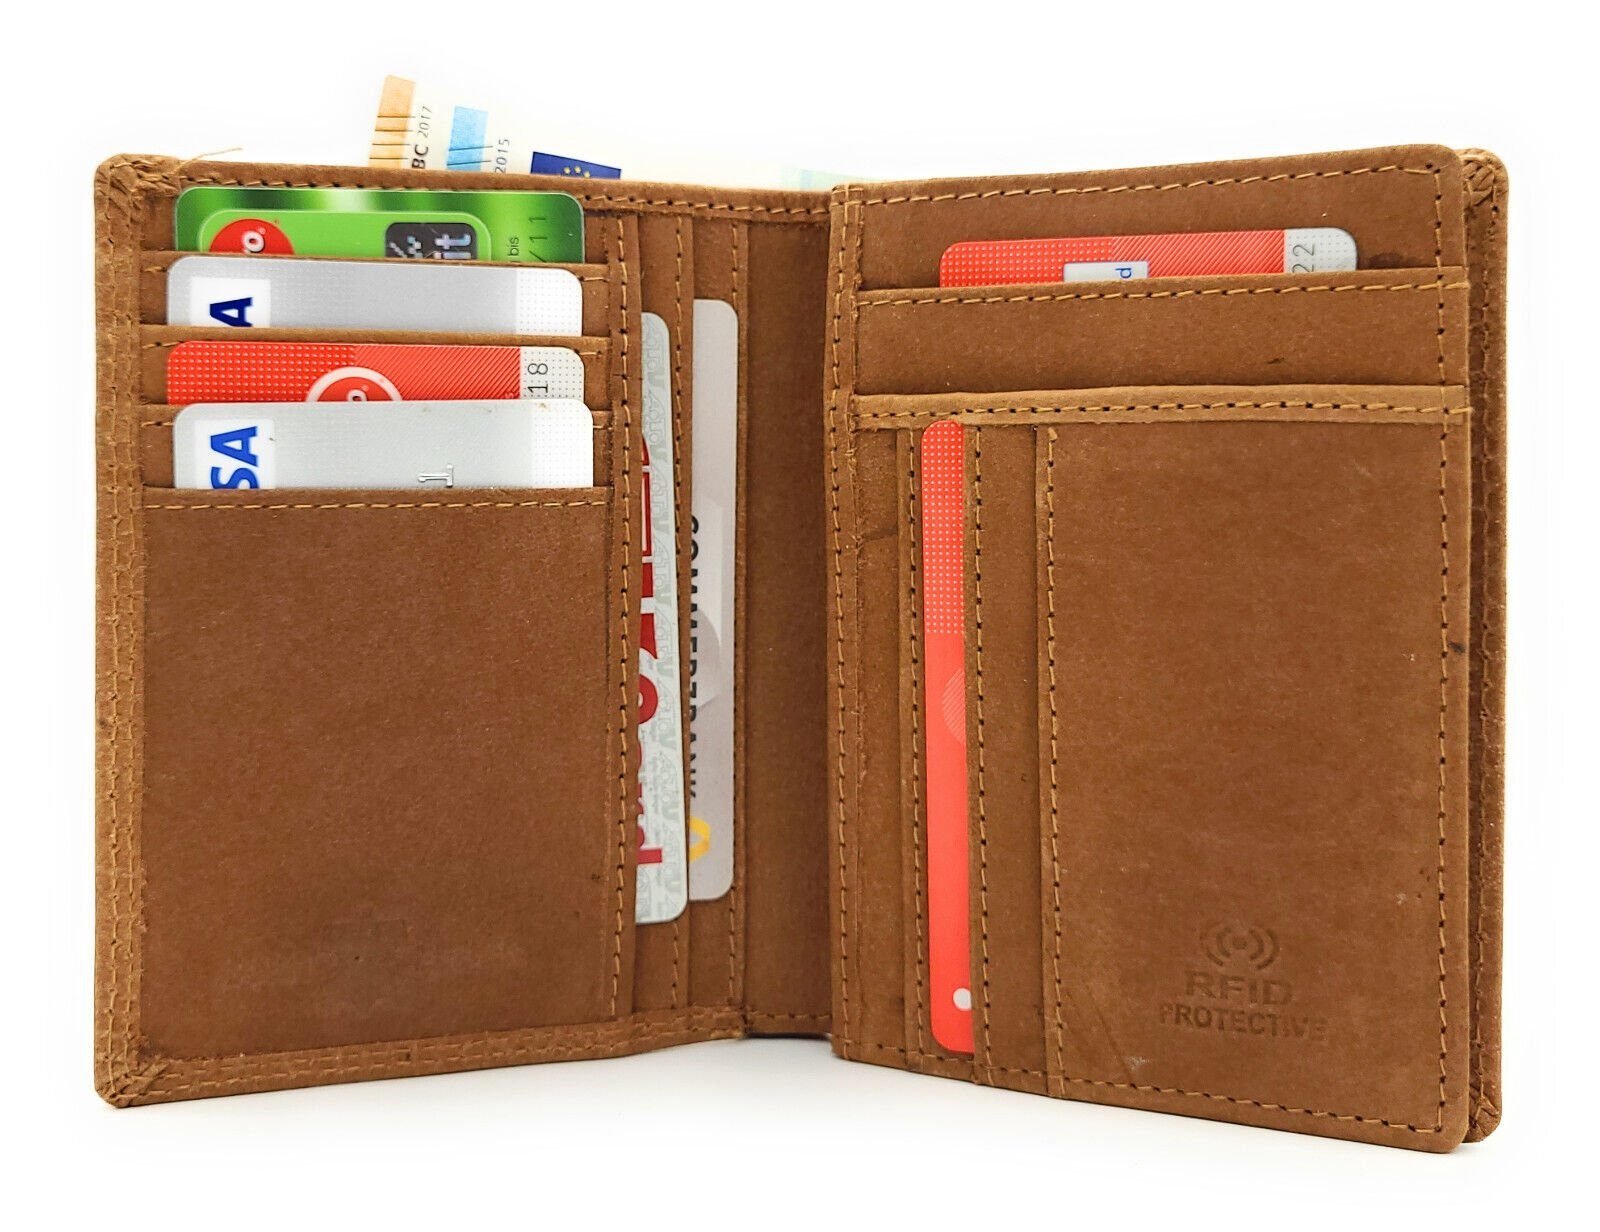 Lemasi Geldbörse echt Leder Portemonnaie mit RFID Schutz, extra flaches Design